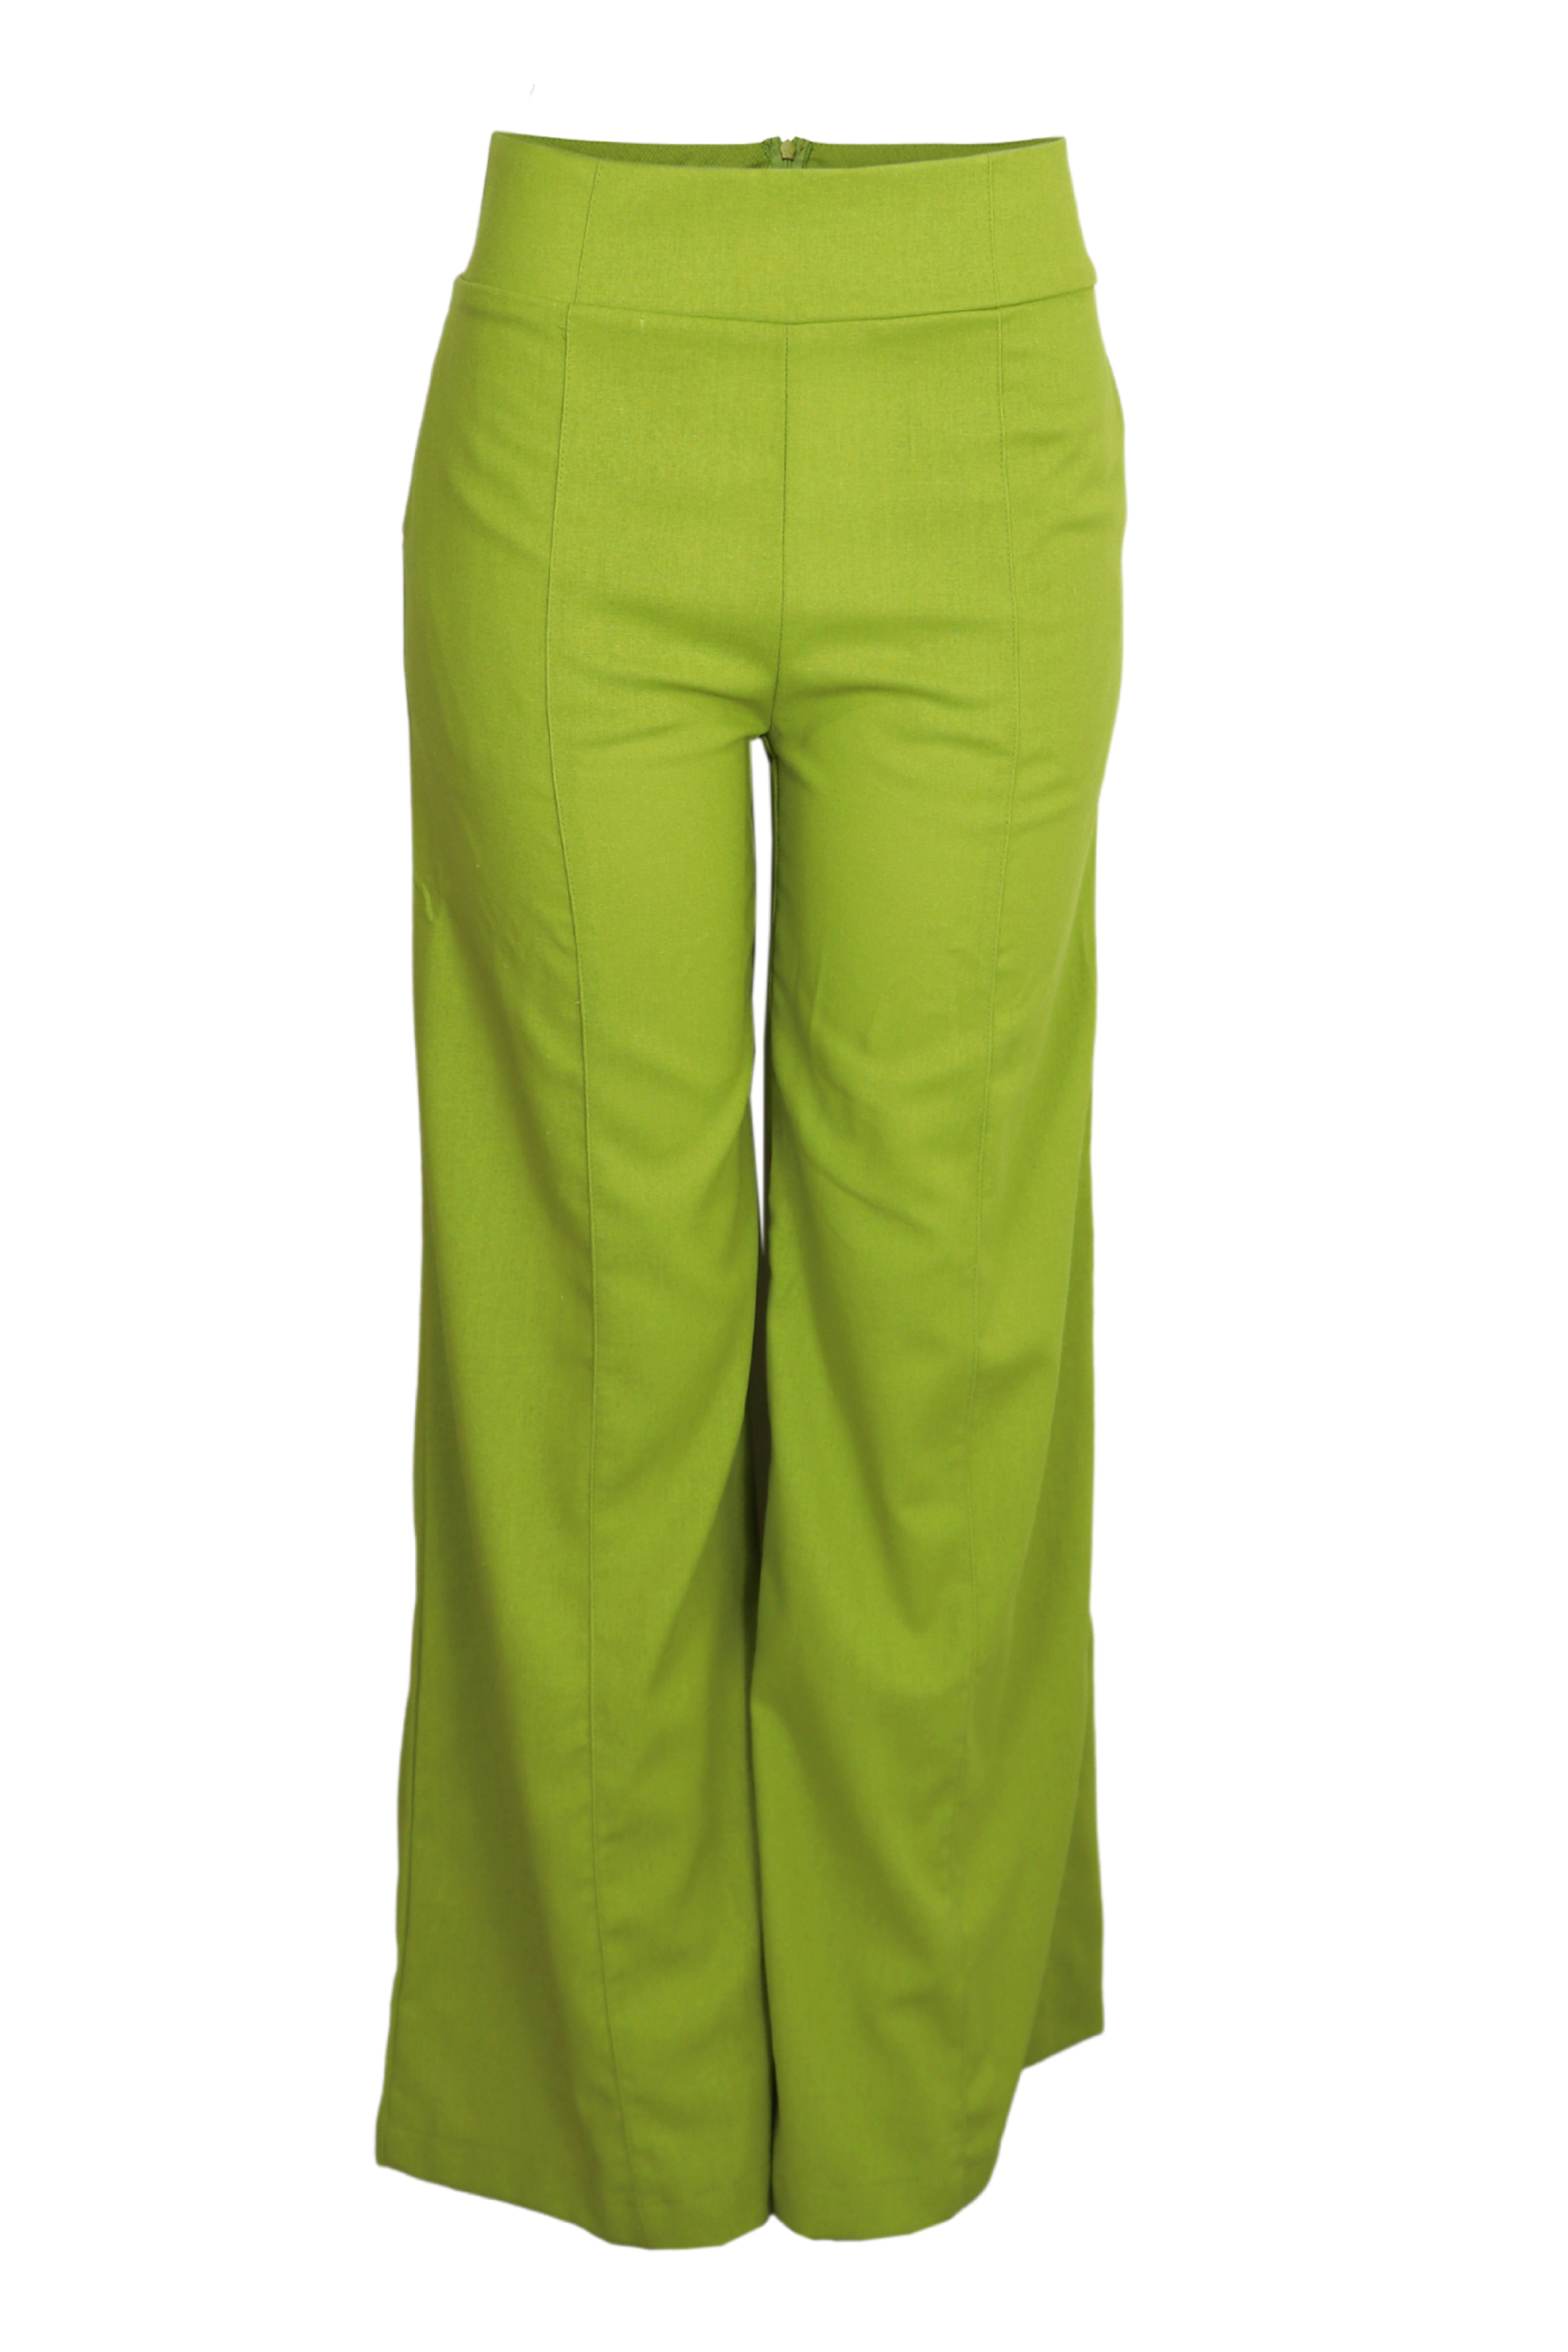 Espectacular Pantalón de lino con venas color verde limon